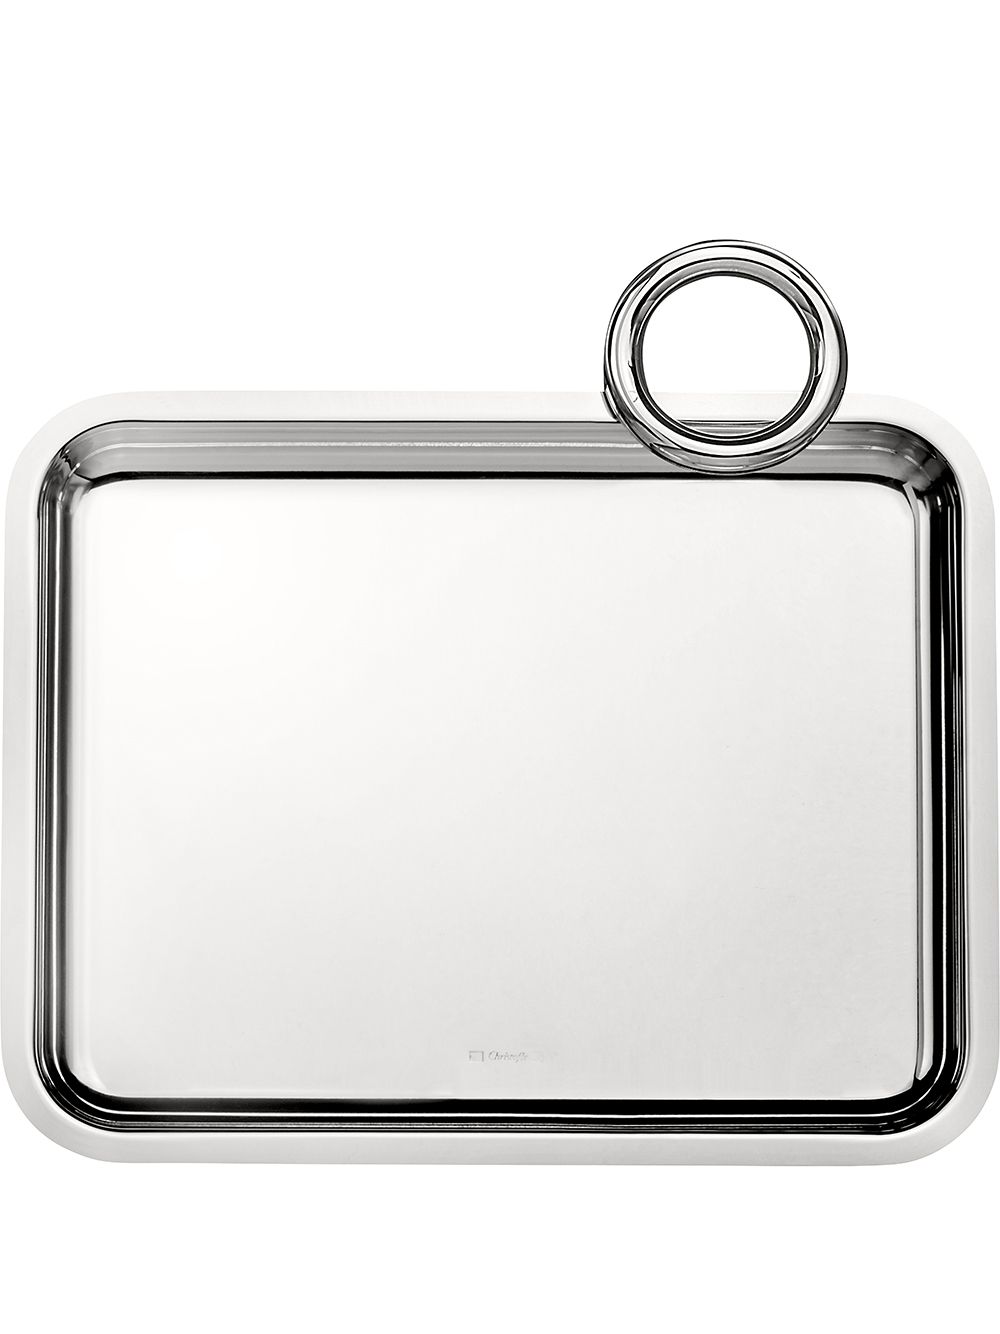 Christofle Vertigo 20cm x 16cm silver-plated 1-handle tray von Christofle